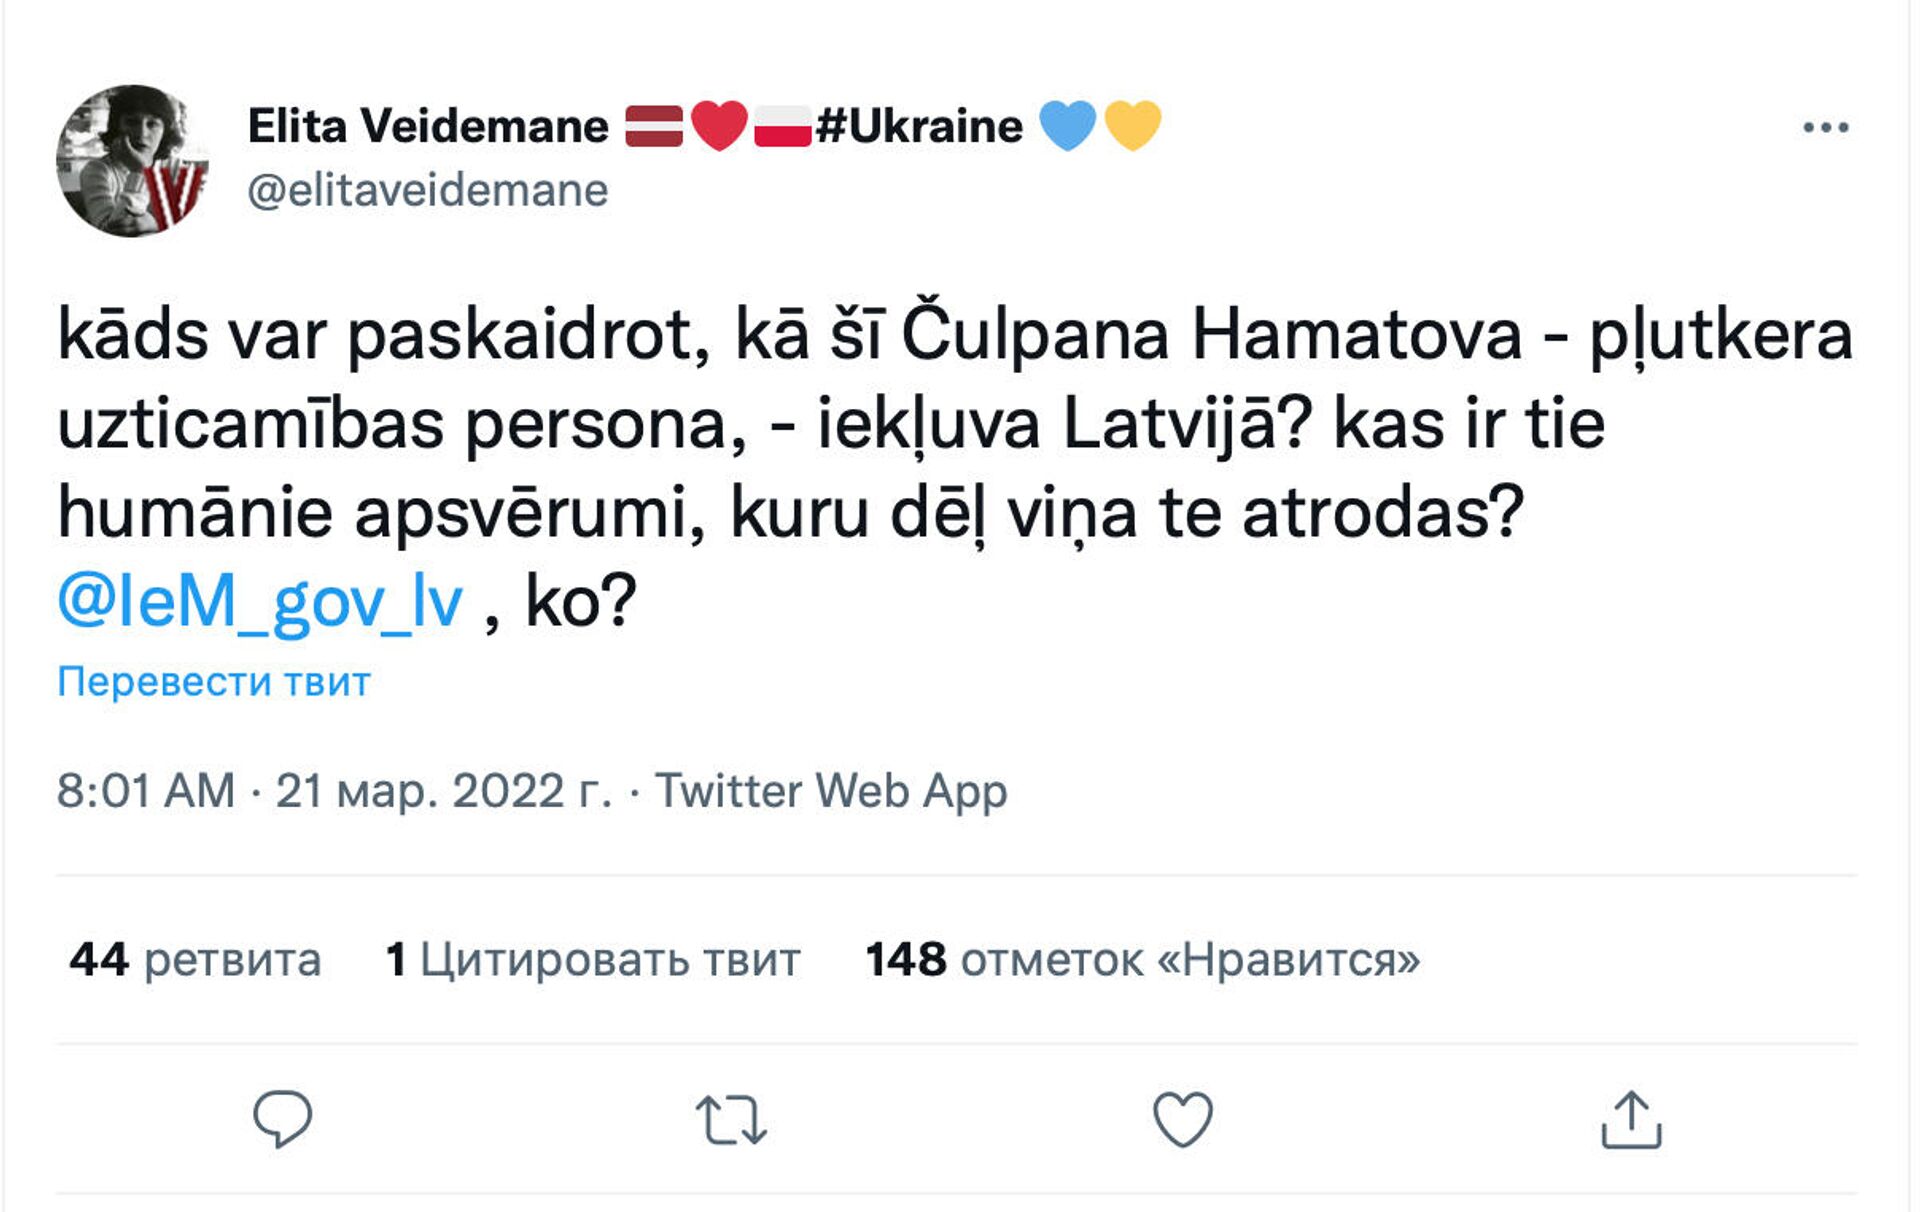 Скриншот поста в Twitter  - Sputnik Латвия, 1920, 22.03.2022